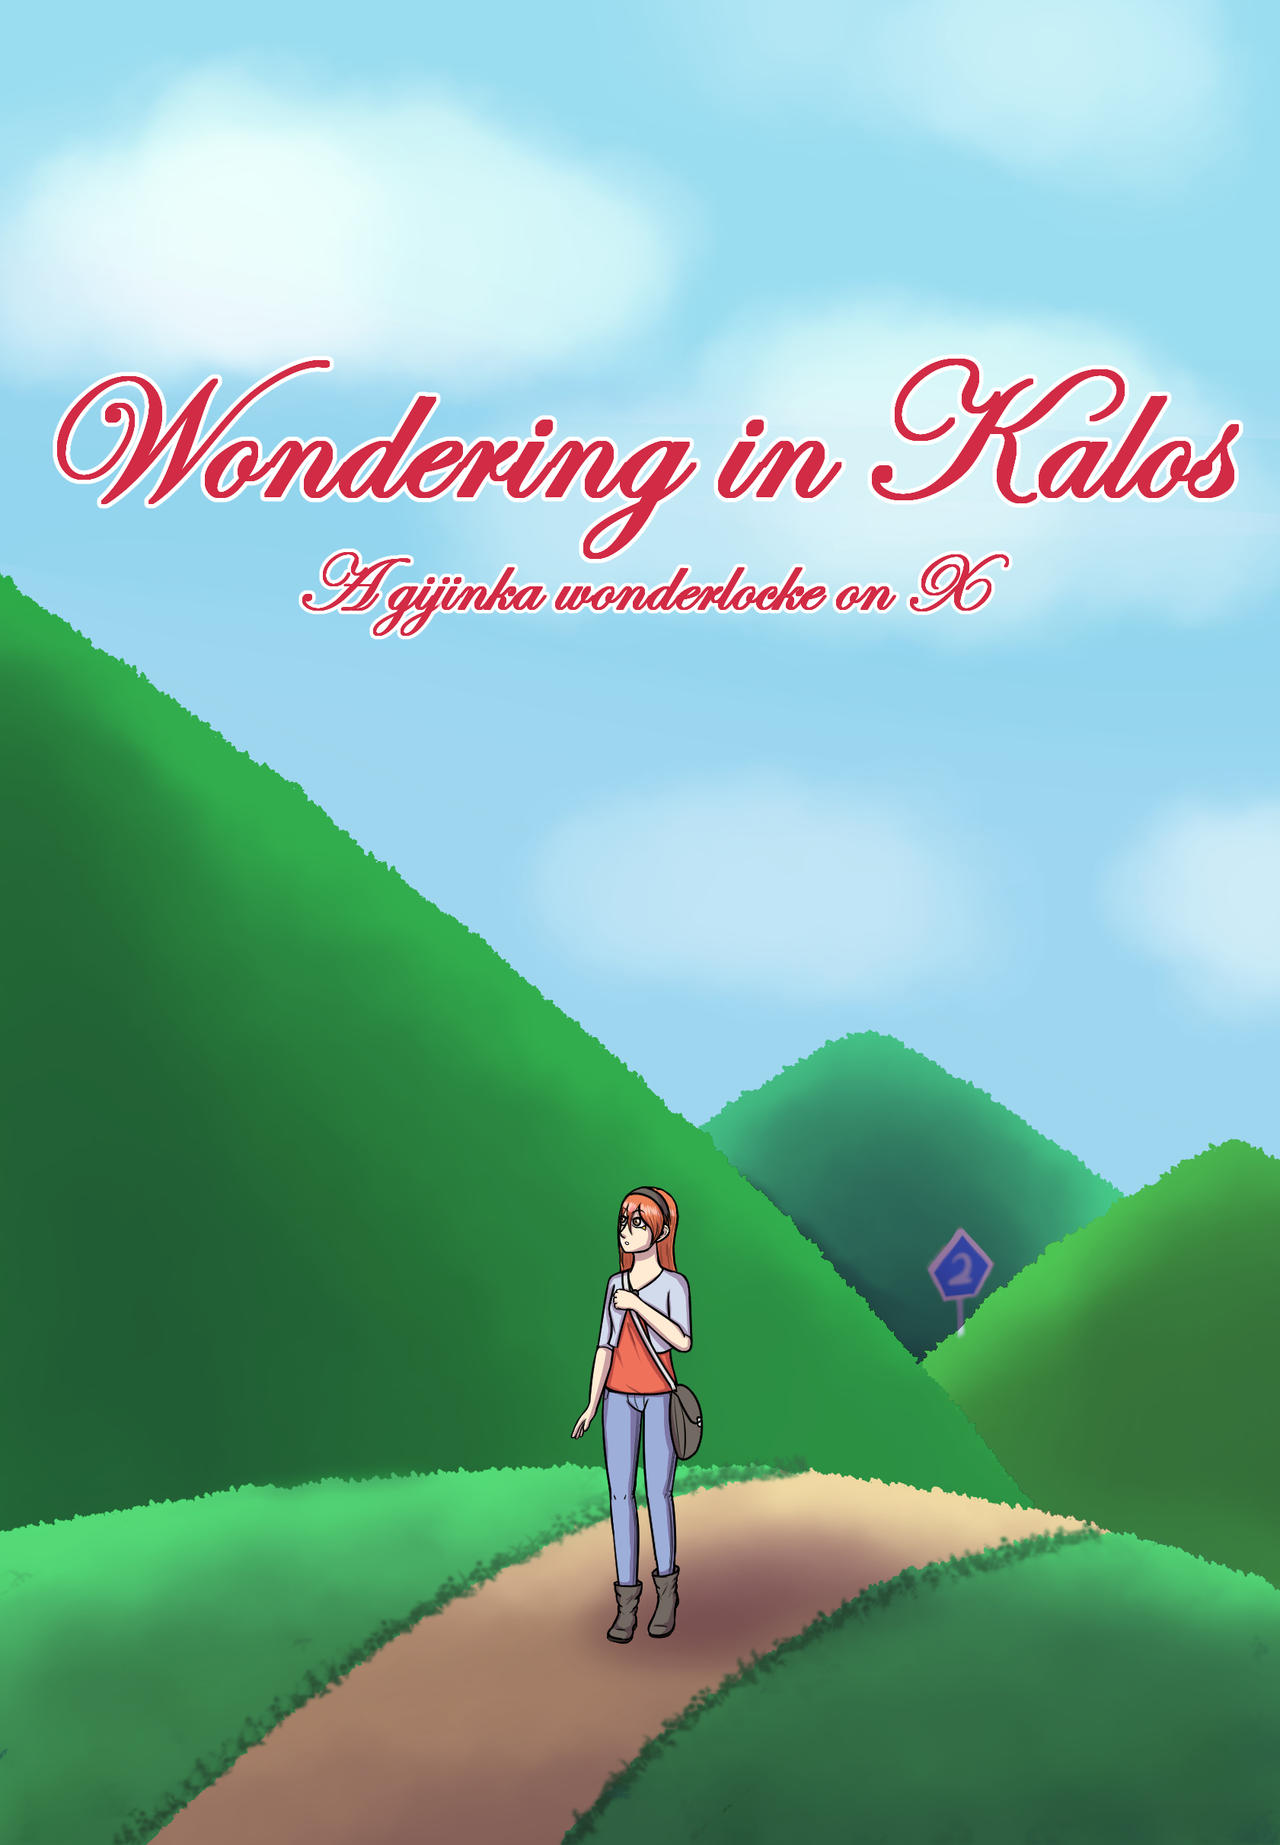 [X] Wondering in Kalos Wondering_in_kalos___a_gijinka_wonderlocke_x_by_ryikochan_ddwn2az-fullview.jpg?token=eyJ0eXAiOiJKV1QiLCJhbGciOiJIUzI1NiJ9.eyJzdWIiOiJ1cm46YXBwOjdlMGQxODg5ODIyNjQzNzNhNWYwZDQxNWVhMGQyNmUwIiwiaXNzIjoidXJuOmFwcDo3ZTBkMTg4OTgyMjY0MzczYTVmMGQ0MTVlYTBkMjZlMCIsIm9iaiI6W1t7ImhlaWdodCI6Ijw9MTg0NSIsInBhdGgiOiJcL2ZcL2IzMDFkYjA1LWI3ZjItNDBkZC1hOGM0LWIwN2Q1YTVjMWJjNFwvZGR3bjJhei1hNjJkMDZhZi04MzI1LTQxNmMtYTNlMS0wMmE5YjU5OWU0NTMuanBnIiwid2lkdGgiOiI8PTEyODAifV1dLCJhdWQiOlsidXJuOnNlcnZpY2U6aW1hZ2Uub3BlcmF0aW9ucyJdfQ